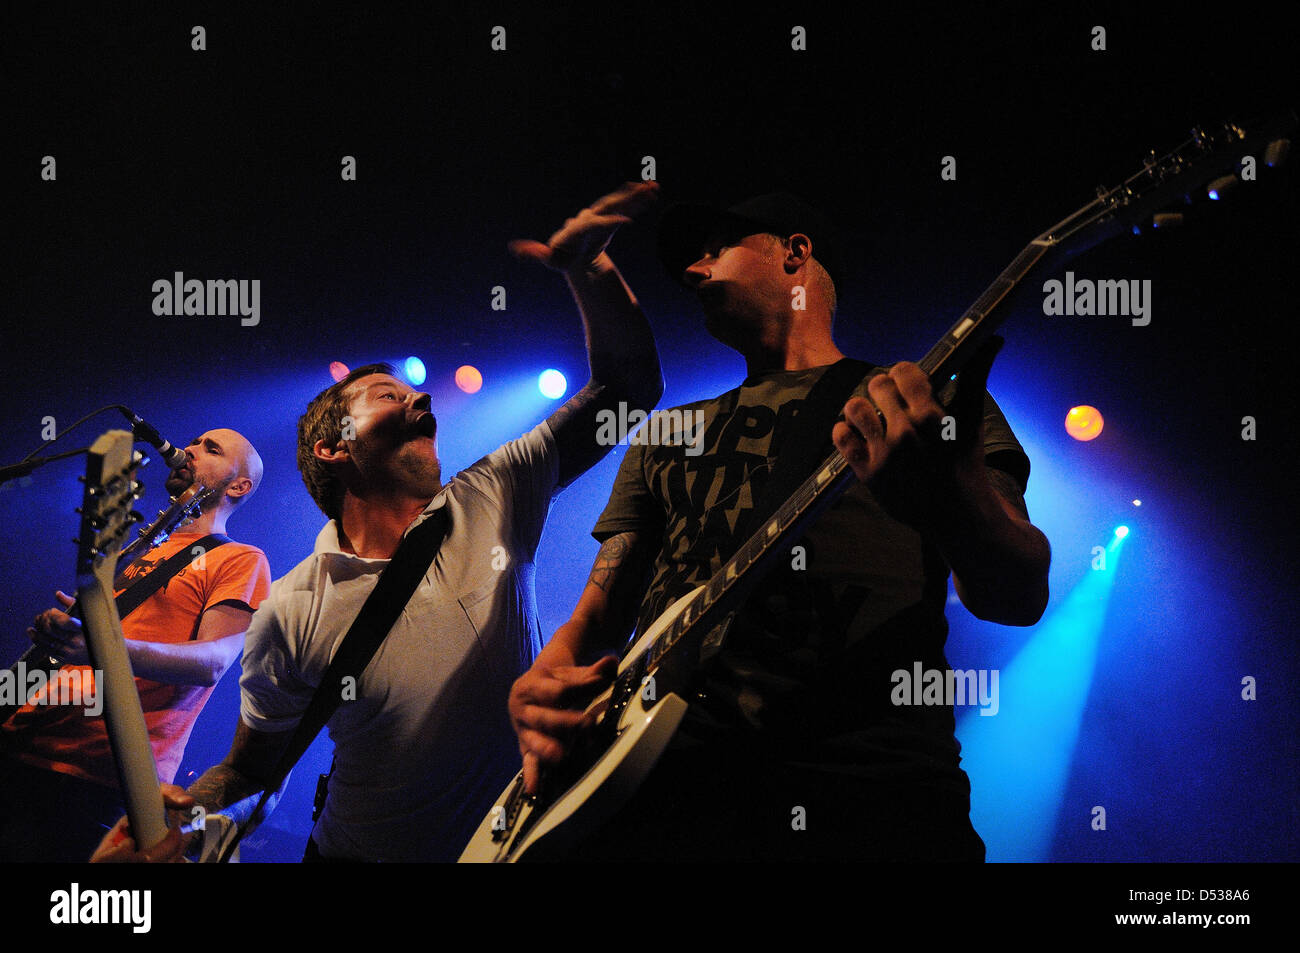 Barcelone, Espagne - 22 SEPTEMBRE : Millencolin band fonctionne à Apolo le 22 septembre 2011 à Barcelone, Espagne. Dix ans d'existence. Banque D'Images